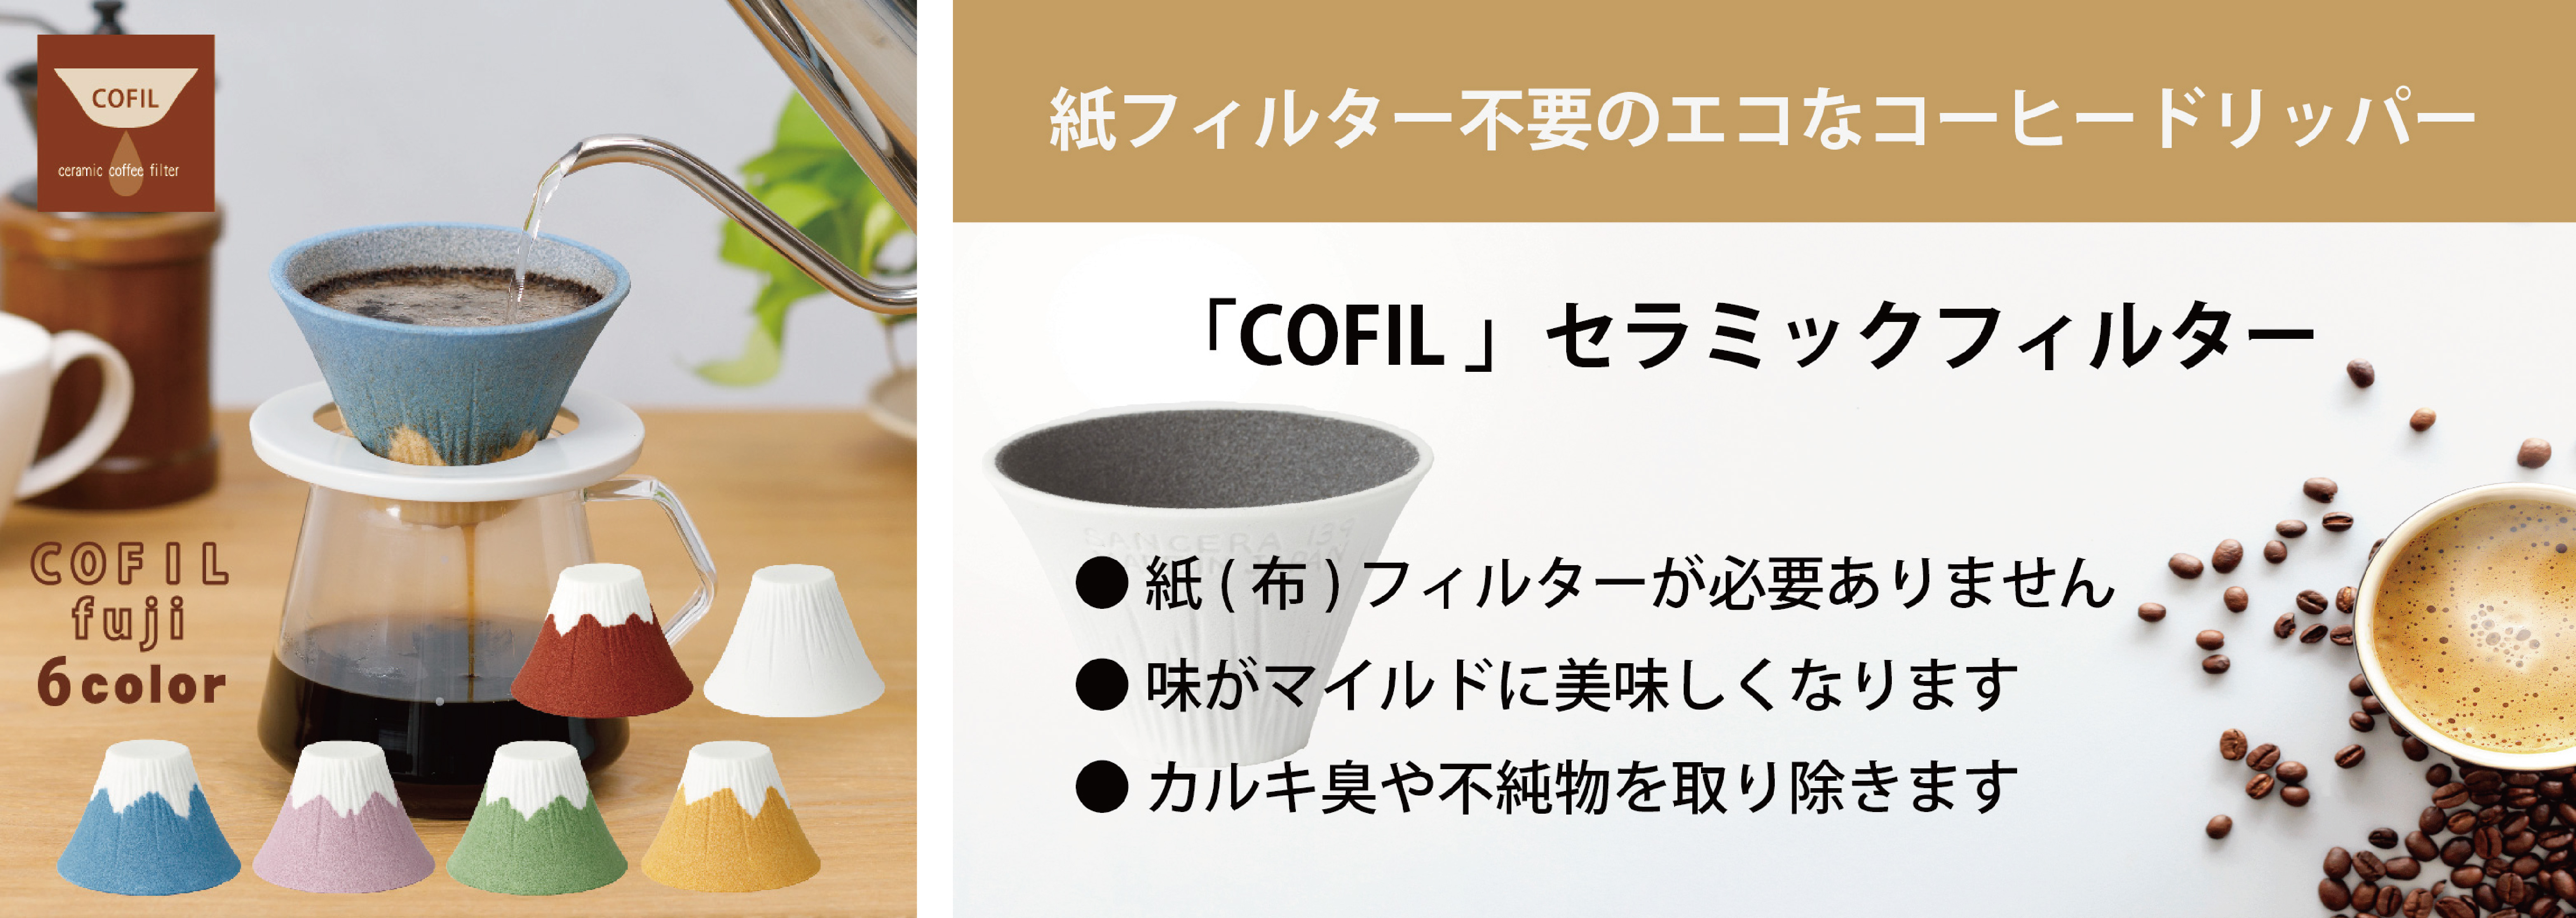 業界初 新しい技術で進化したカラーのセラミック コーヒー フィルター 今までになかった豊富なカラーと富士山の形を実現 伊万里陶芸のプレスリリース